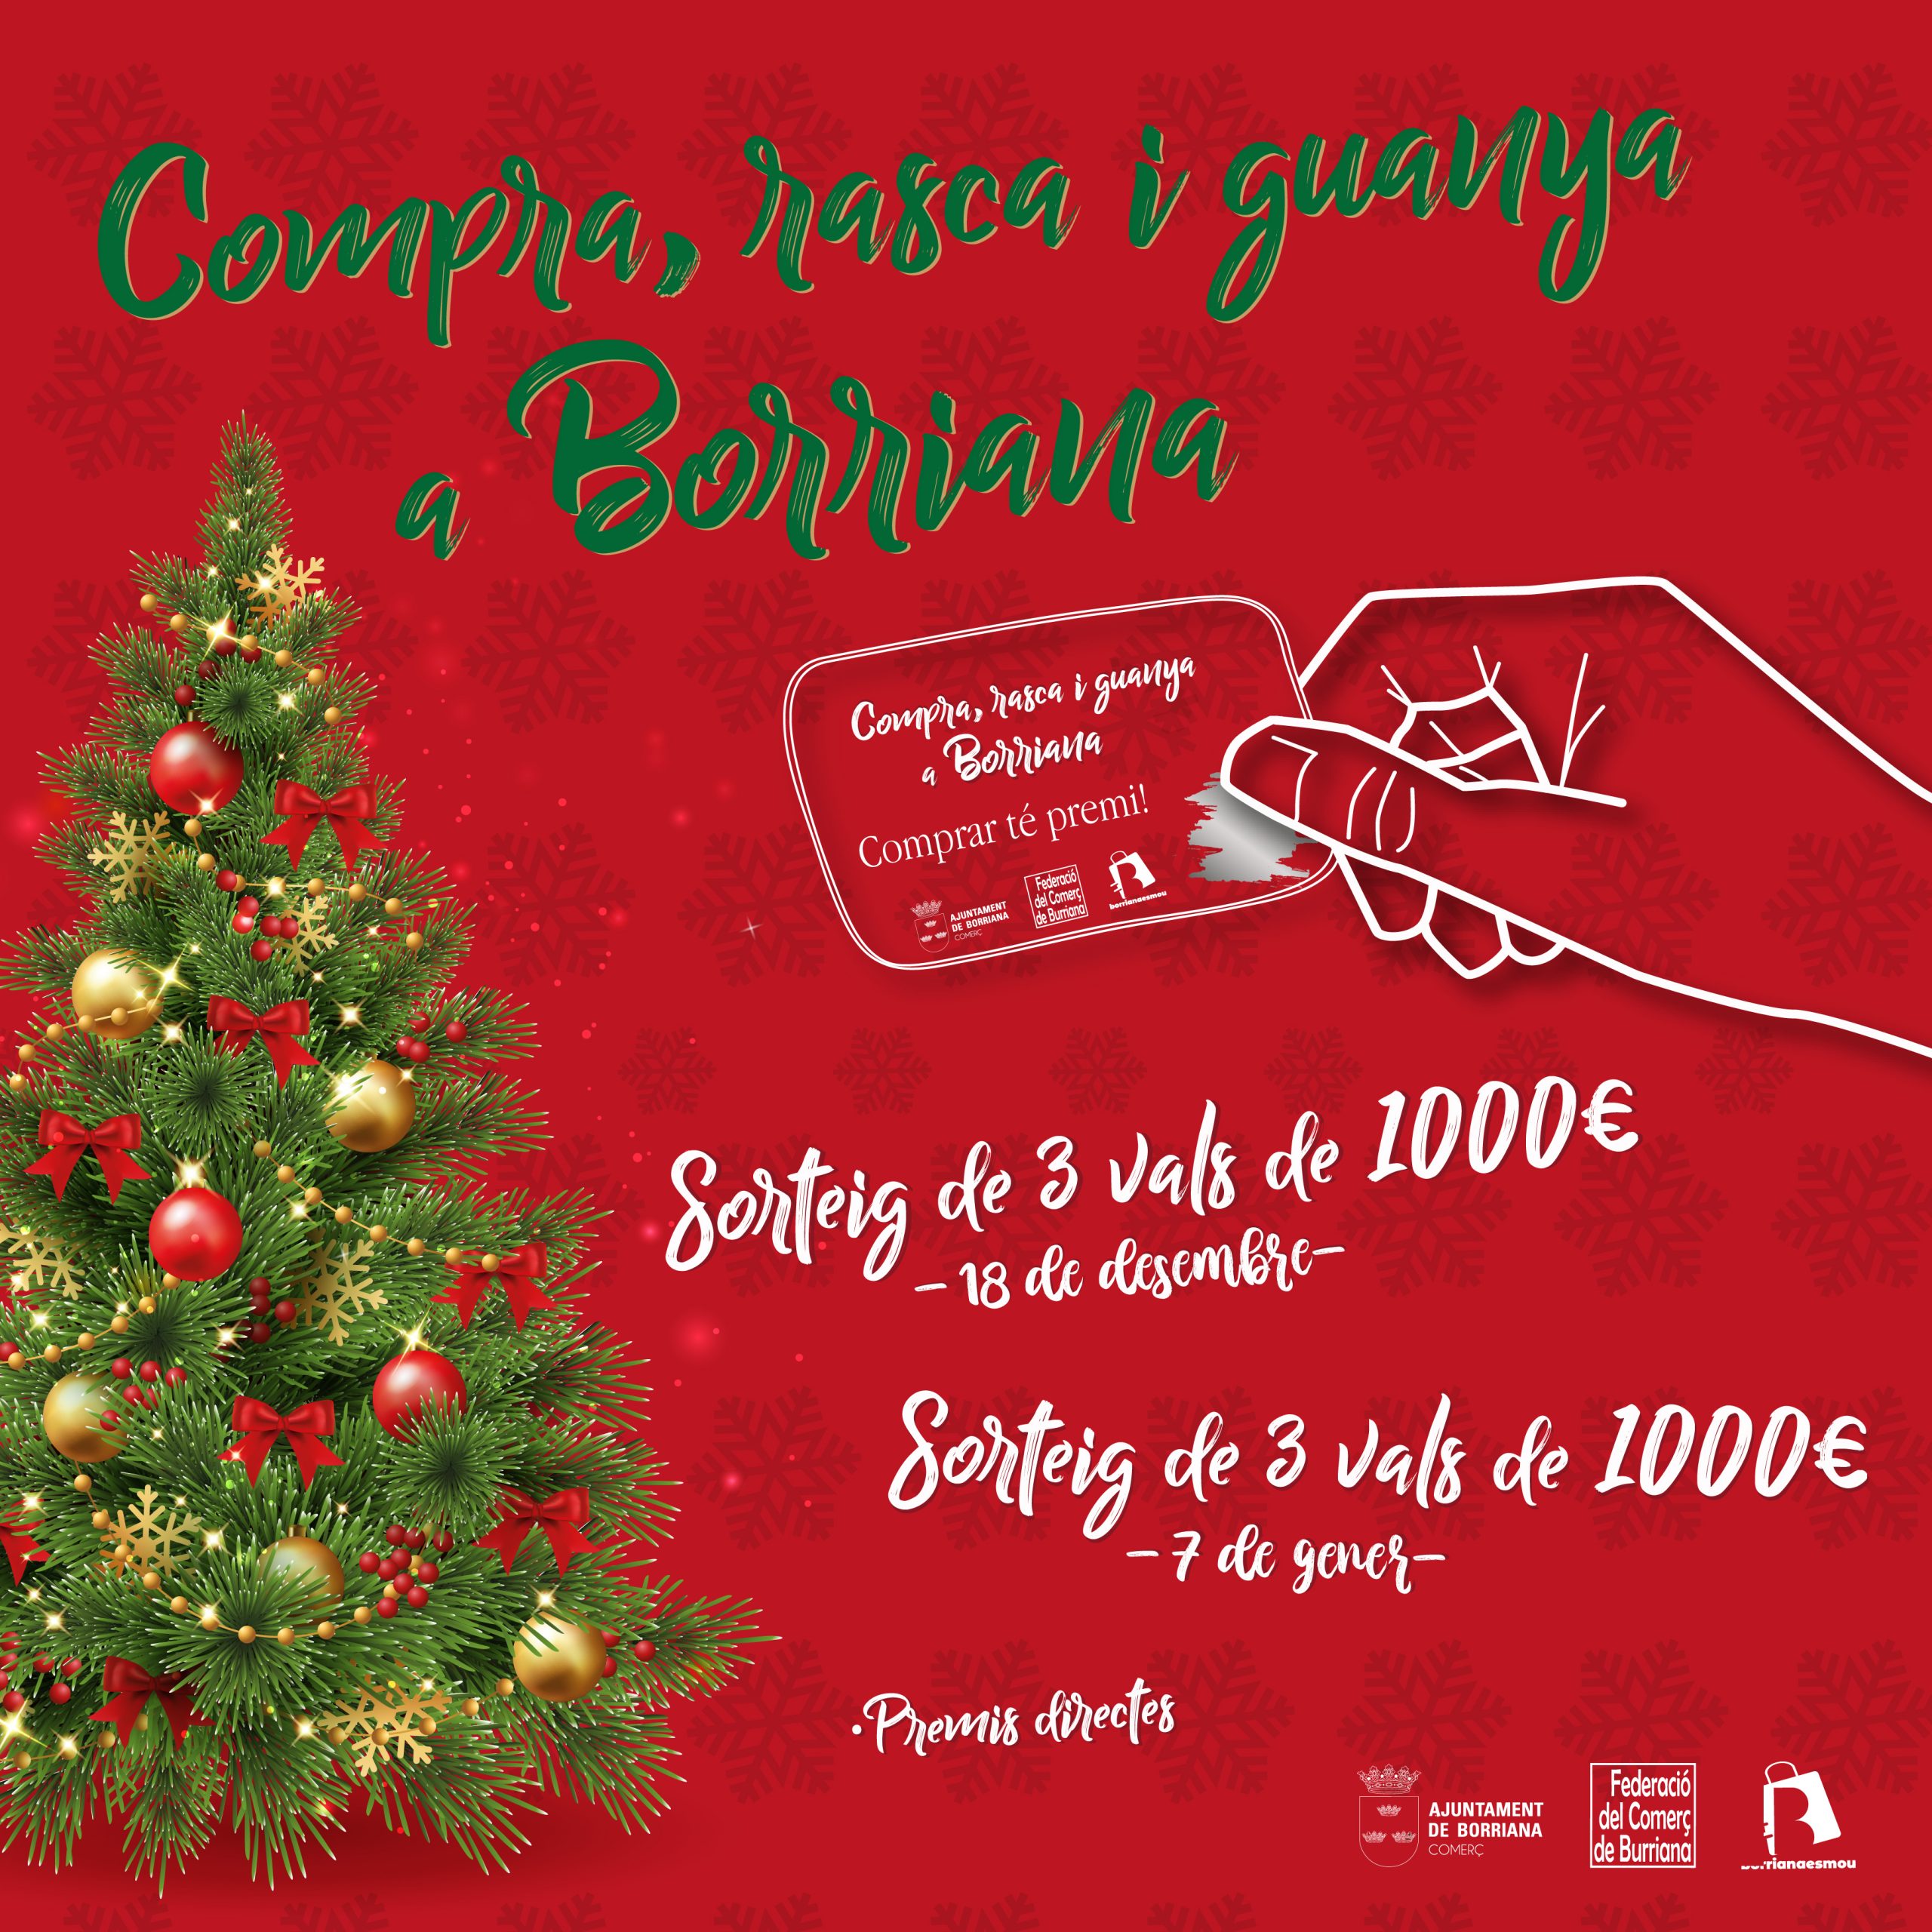 Borriana lanza un ‘Rasca’ con un total de 8.000 euros en premios y 2.000 regalos directos para promocionar el comercio local